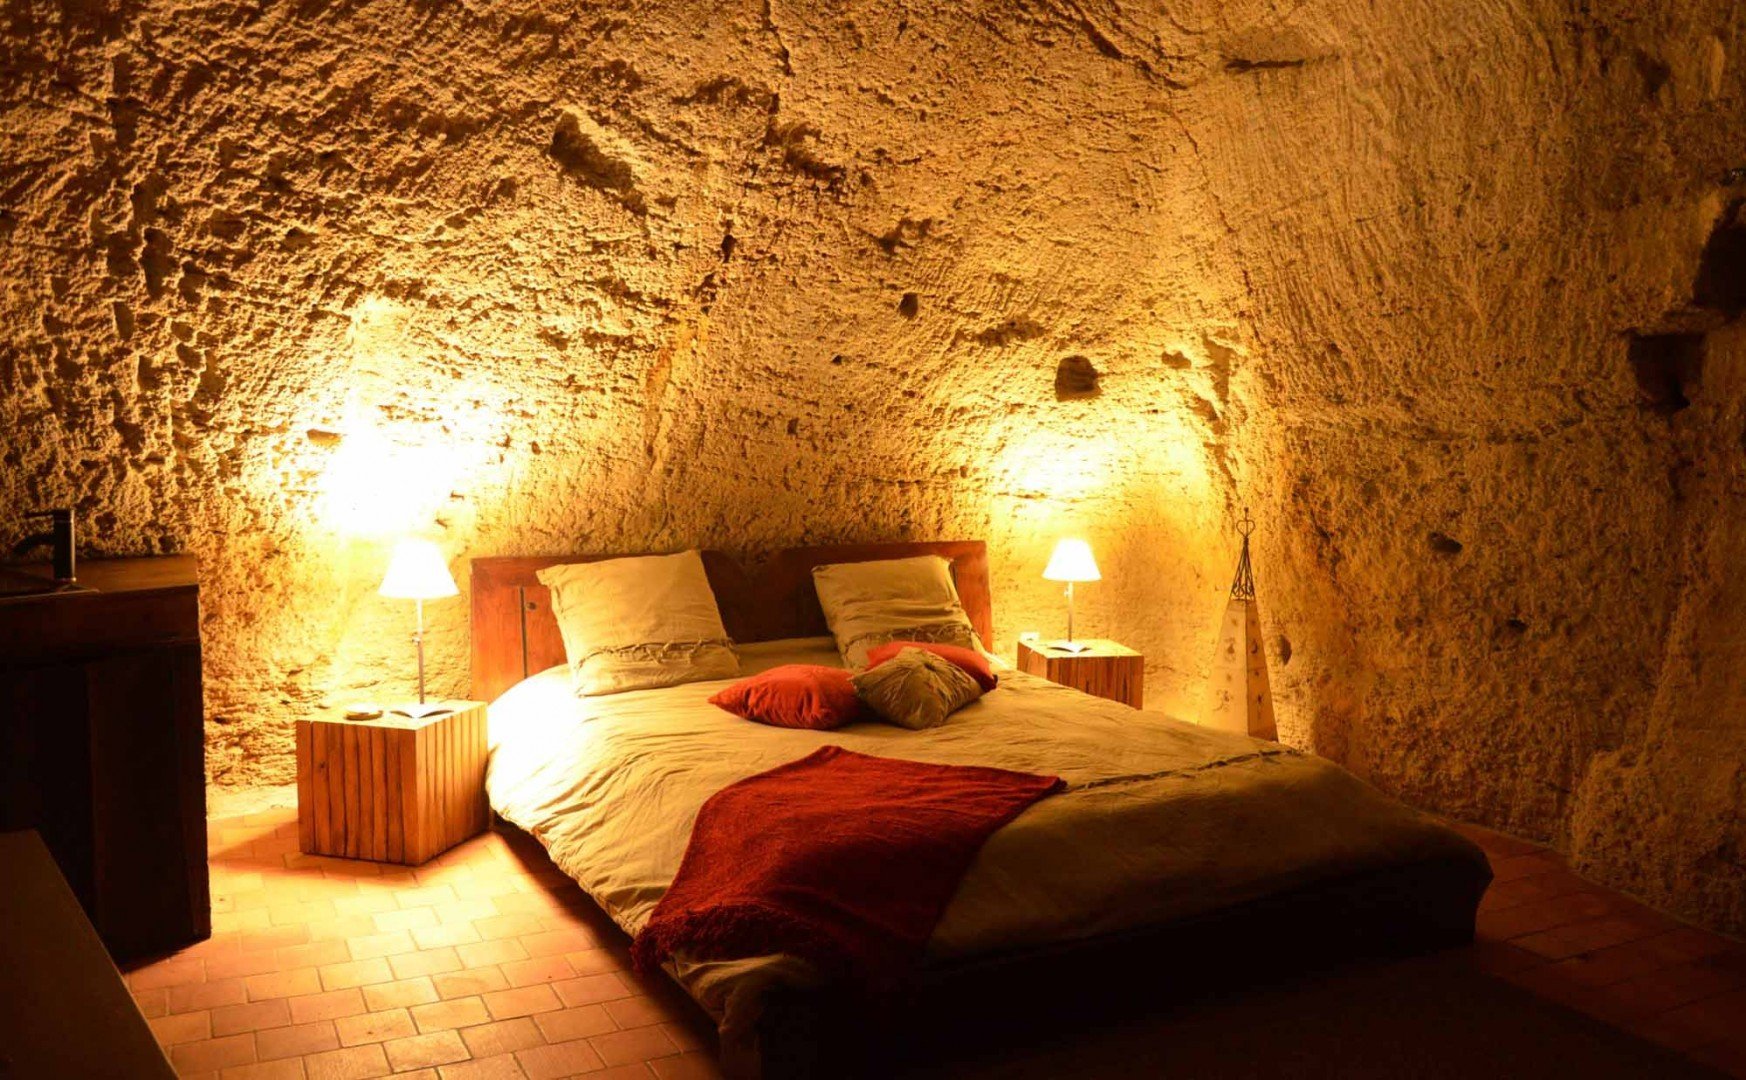 Скала на потолке. Комната в стиле пещеры. Спальня в стиле пещеры. Комната в пещере. Спальня в пещере.